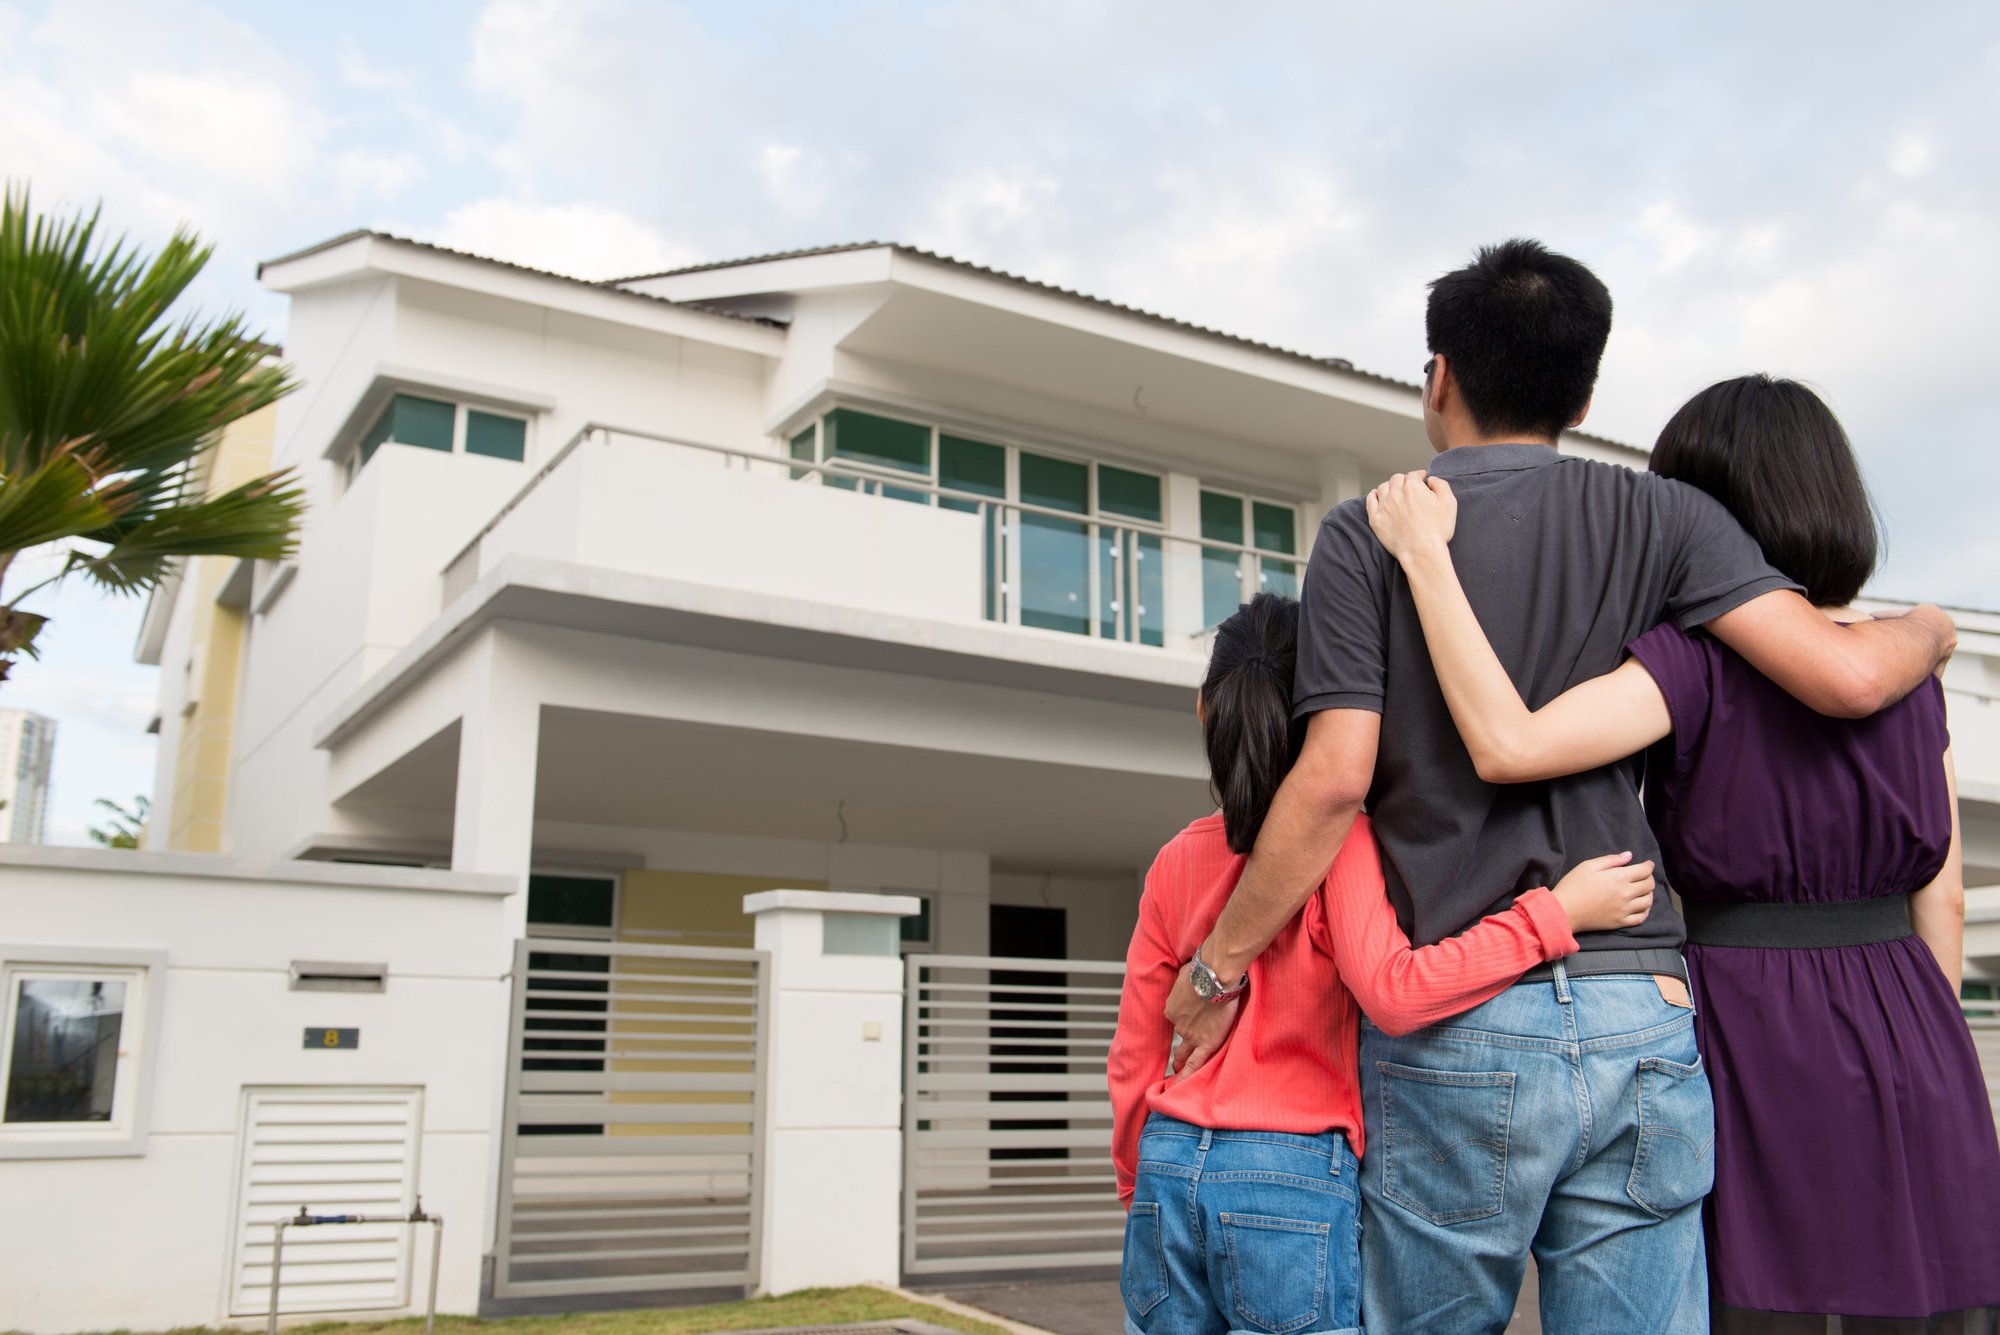 Chuyên gia tư vấn phương án mua nhà hợp lý với tài chính cho vợ chồng trẻ ở Hà Nội  - Ảnh 2.